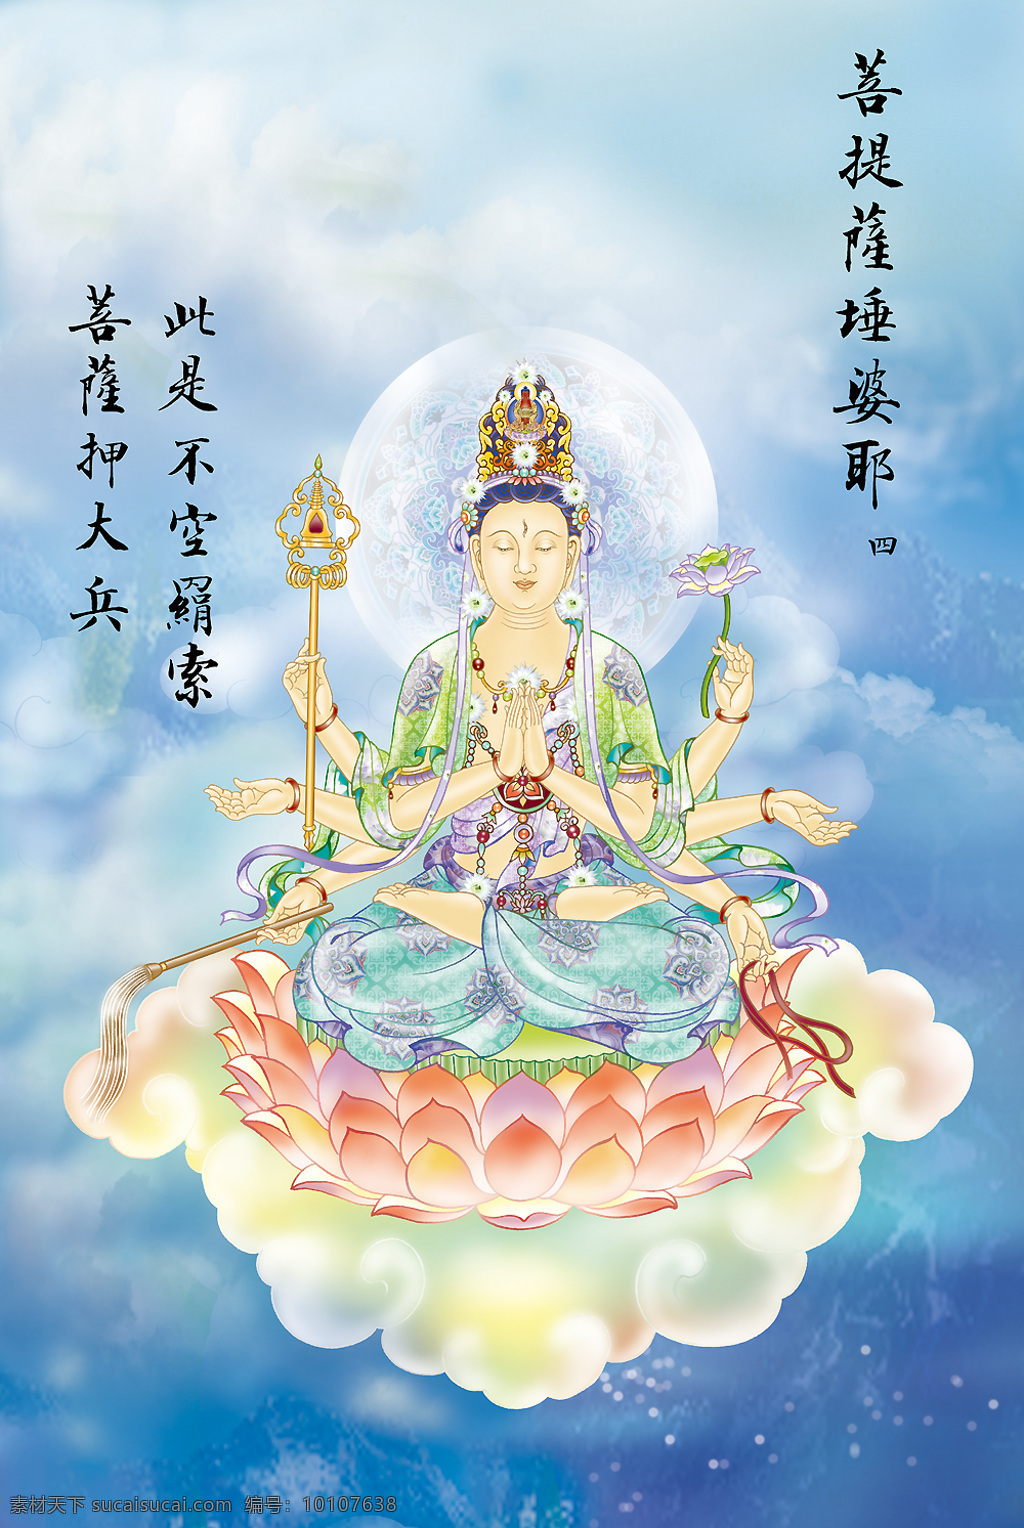 大悲出相图4 佛教 依林法师画 林隆达居士书 台湾 文化艺术 宗教信仰 设计图库